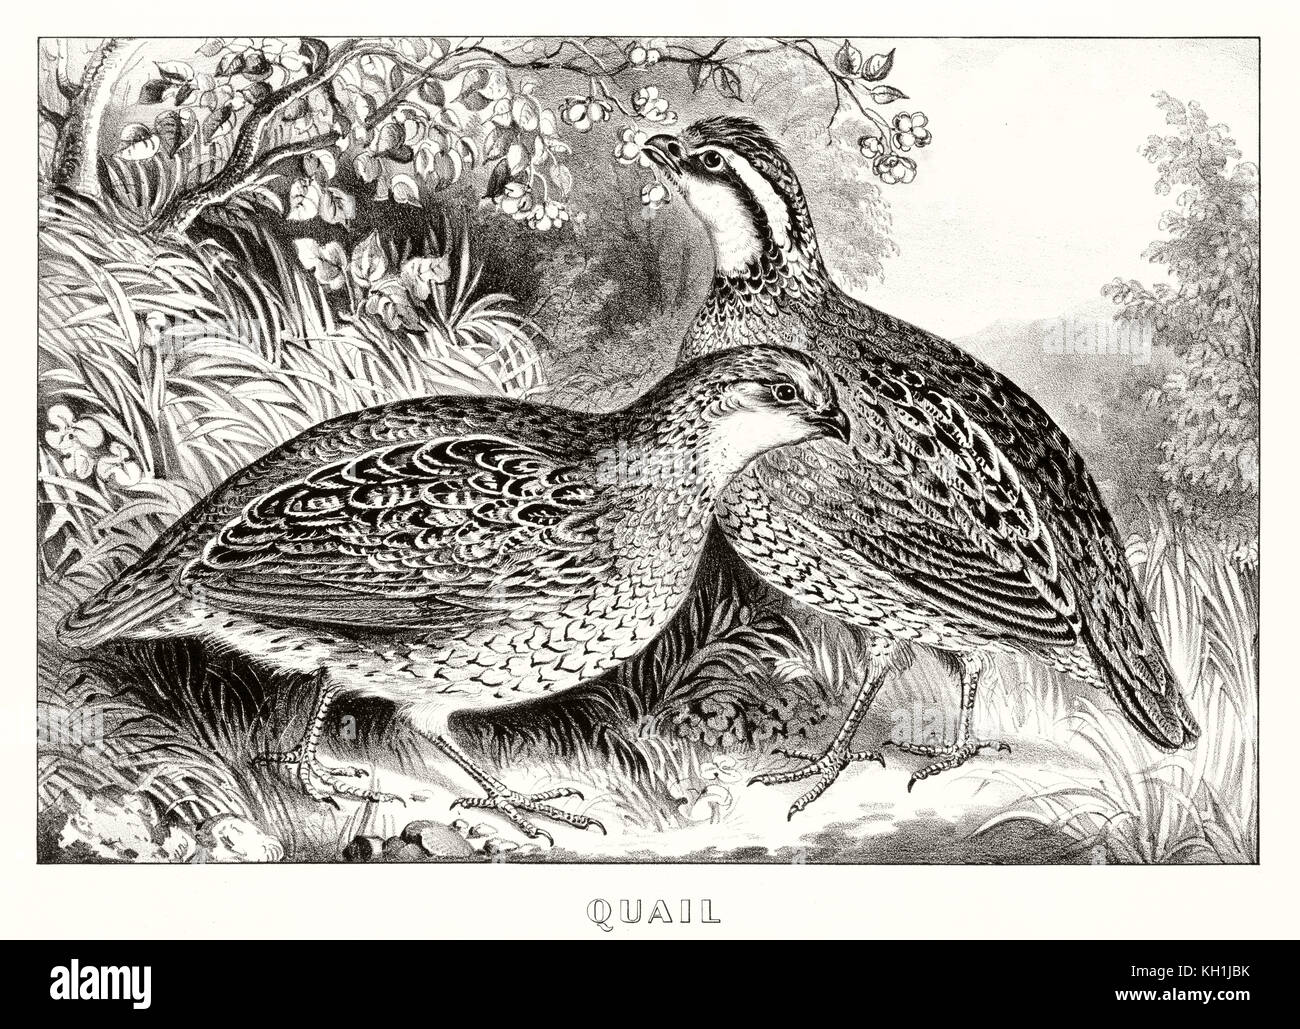 Vieille illustration de deux cailles (Coturnix coturnix). Par Currier & Ives, publ. à New York, 1871 Banque D'Images